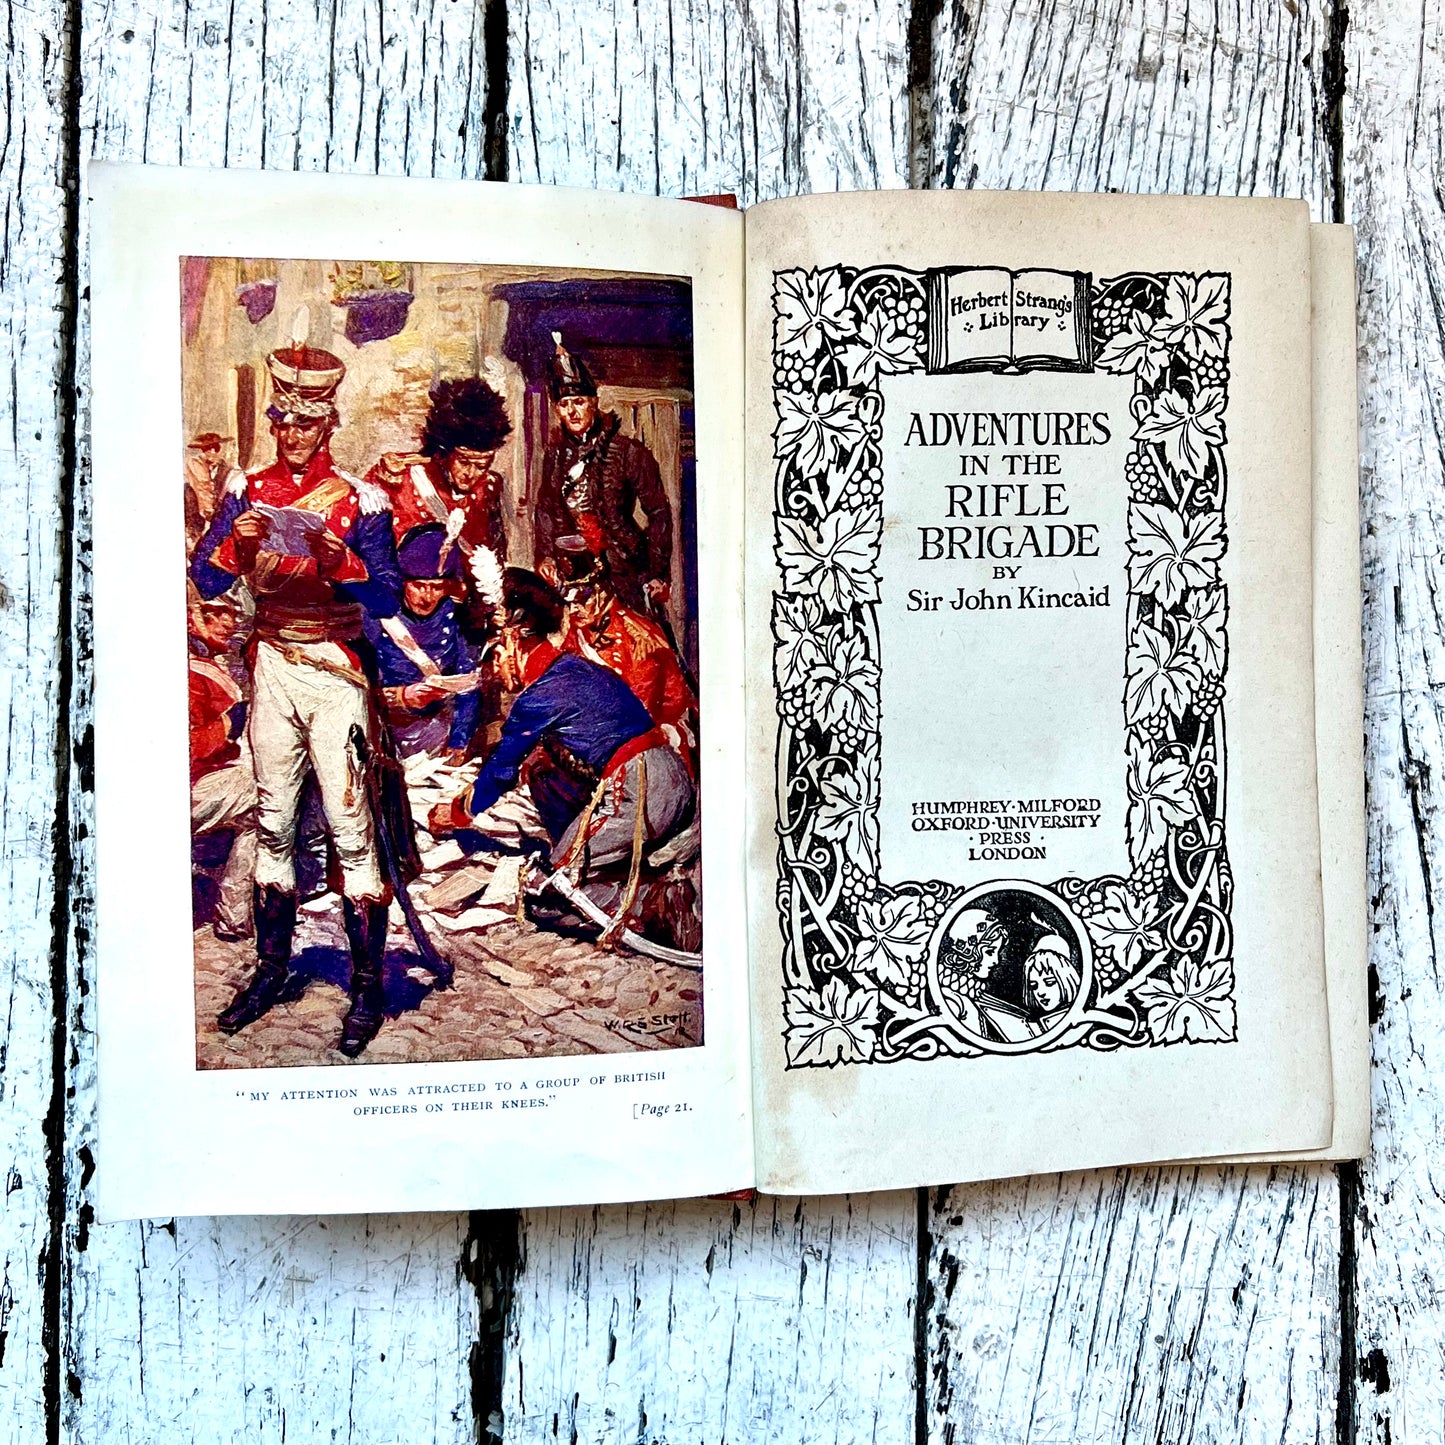 古董精装本《步枪旅历险记》一书，作者是约翰·金凯德爵士，赫伯特·斯特朗图书馆，1919 年版。